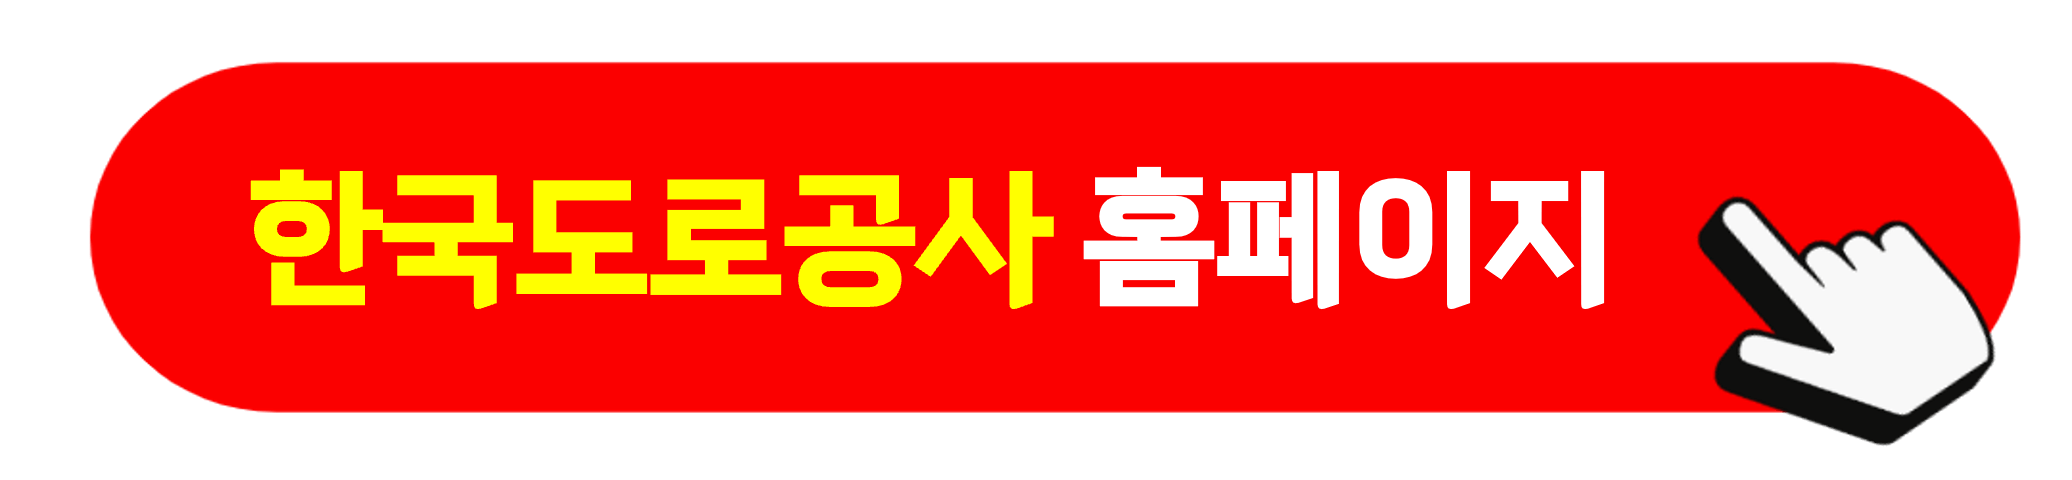 한국도로공사 홈페이지 바로가기